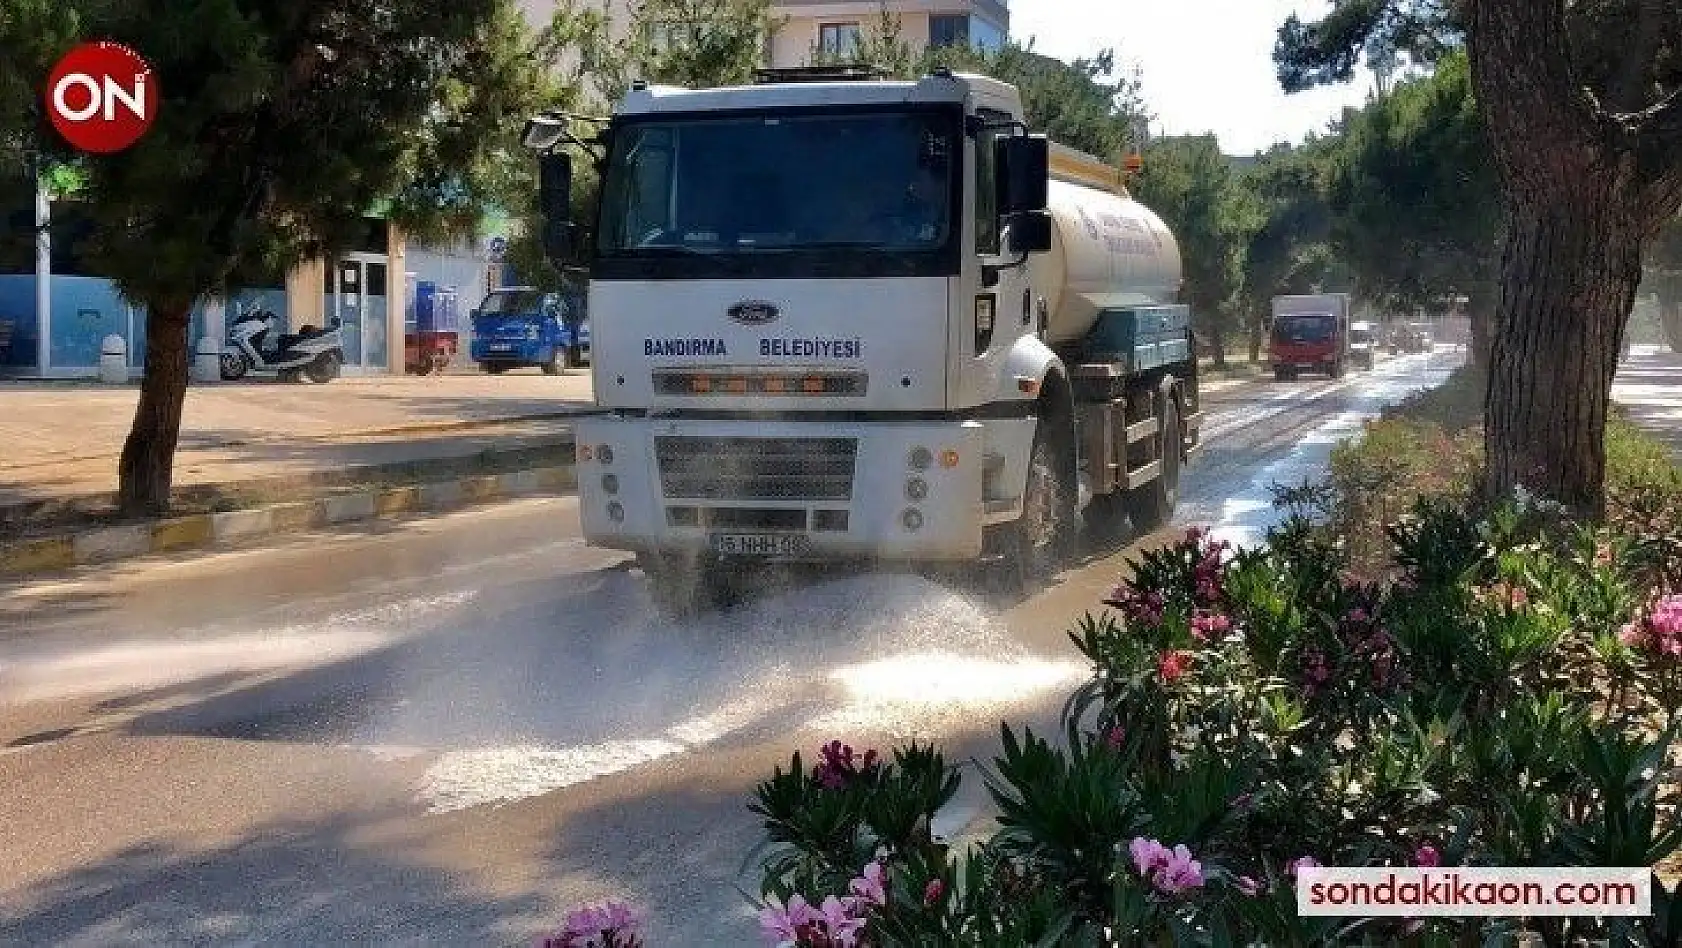 Bandırma Belediyesi'nden Erdek'e temizlik desteği